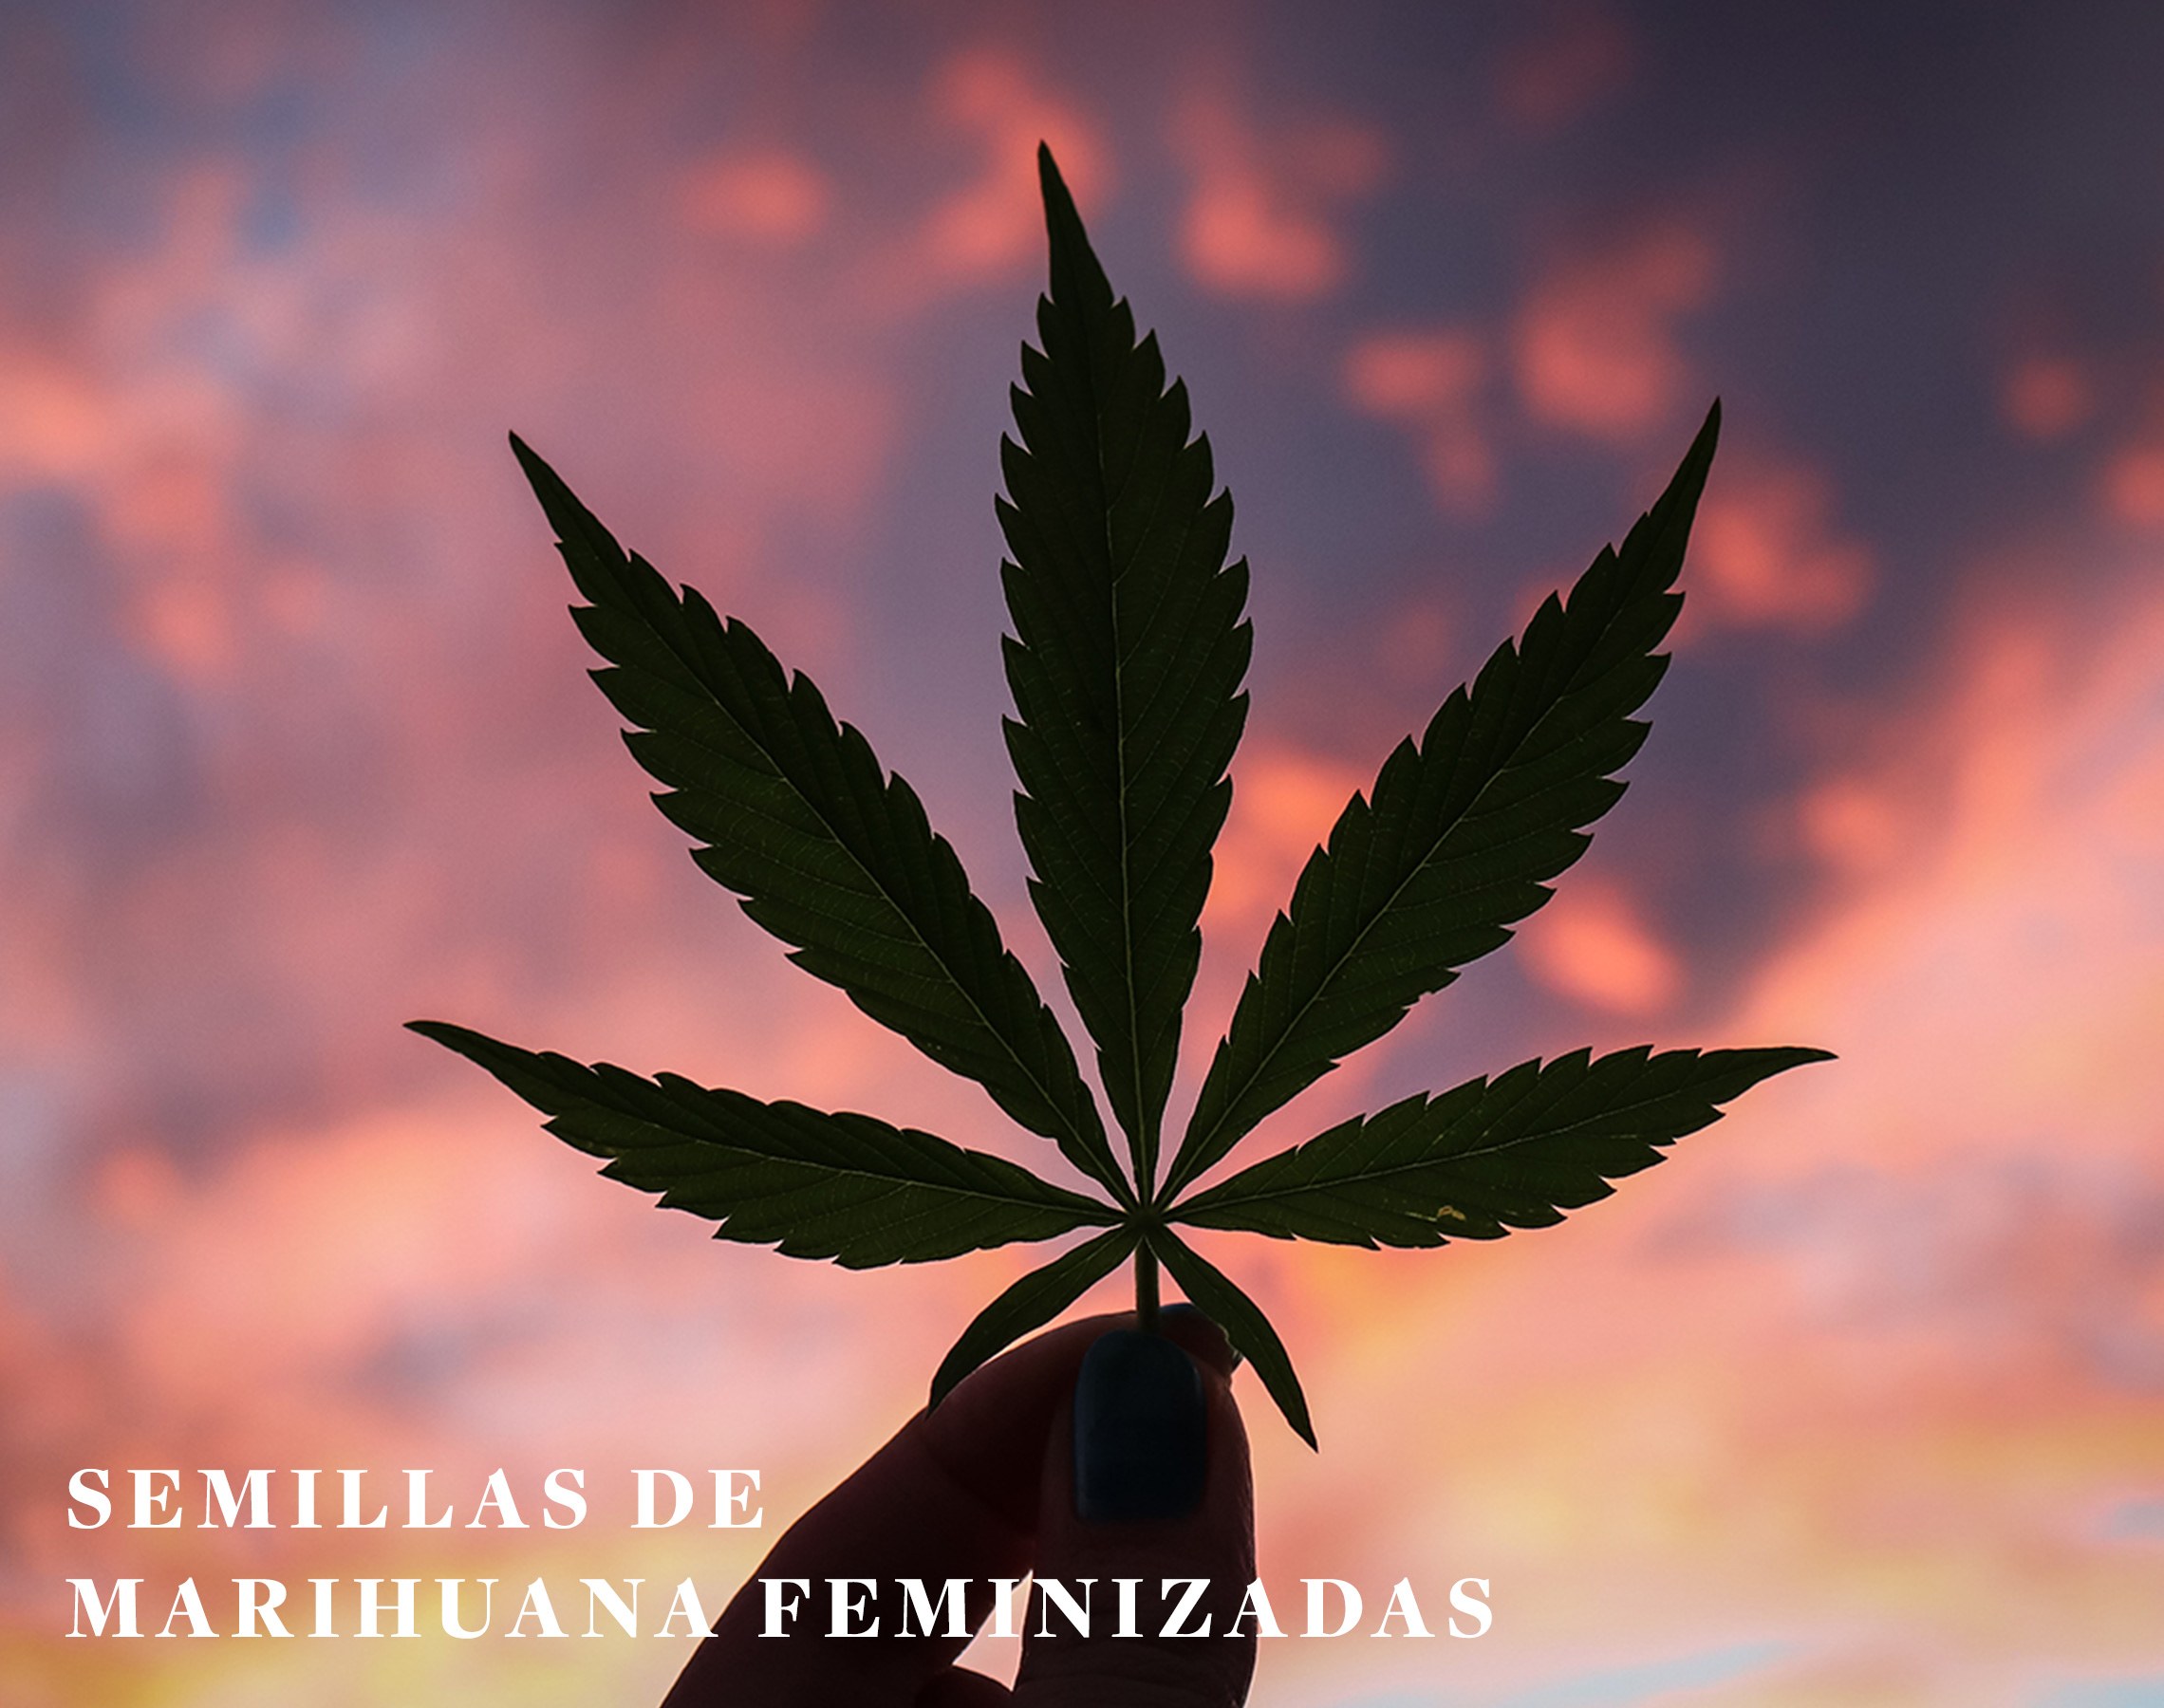 Semillas de marihuana feminizada